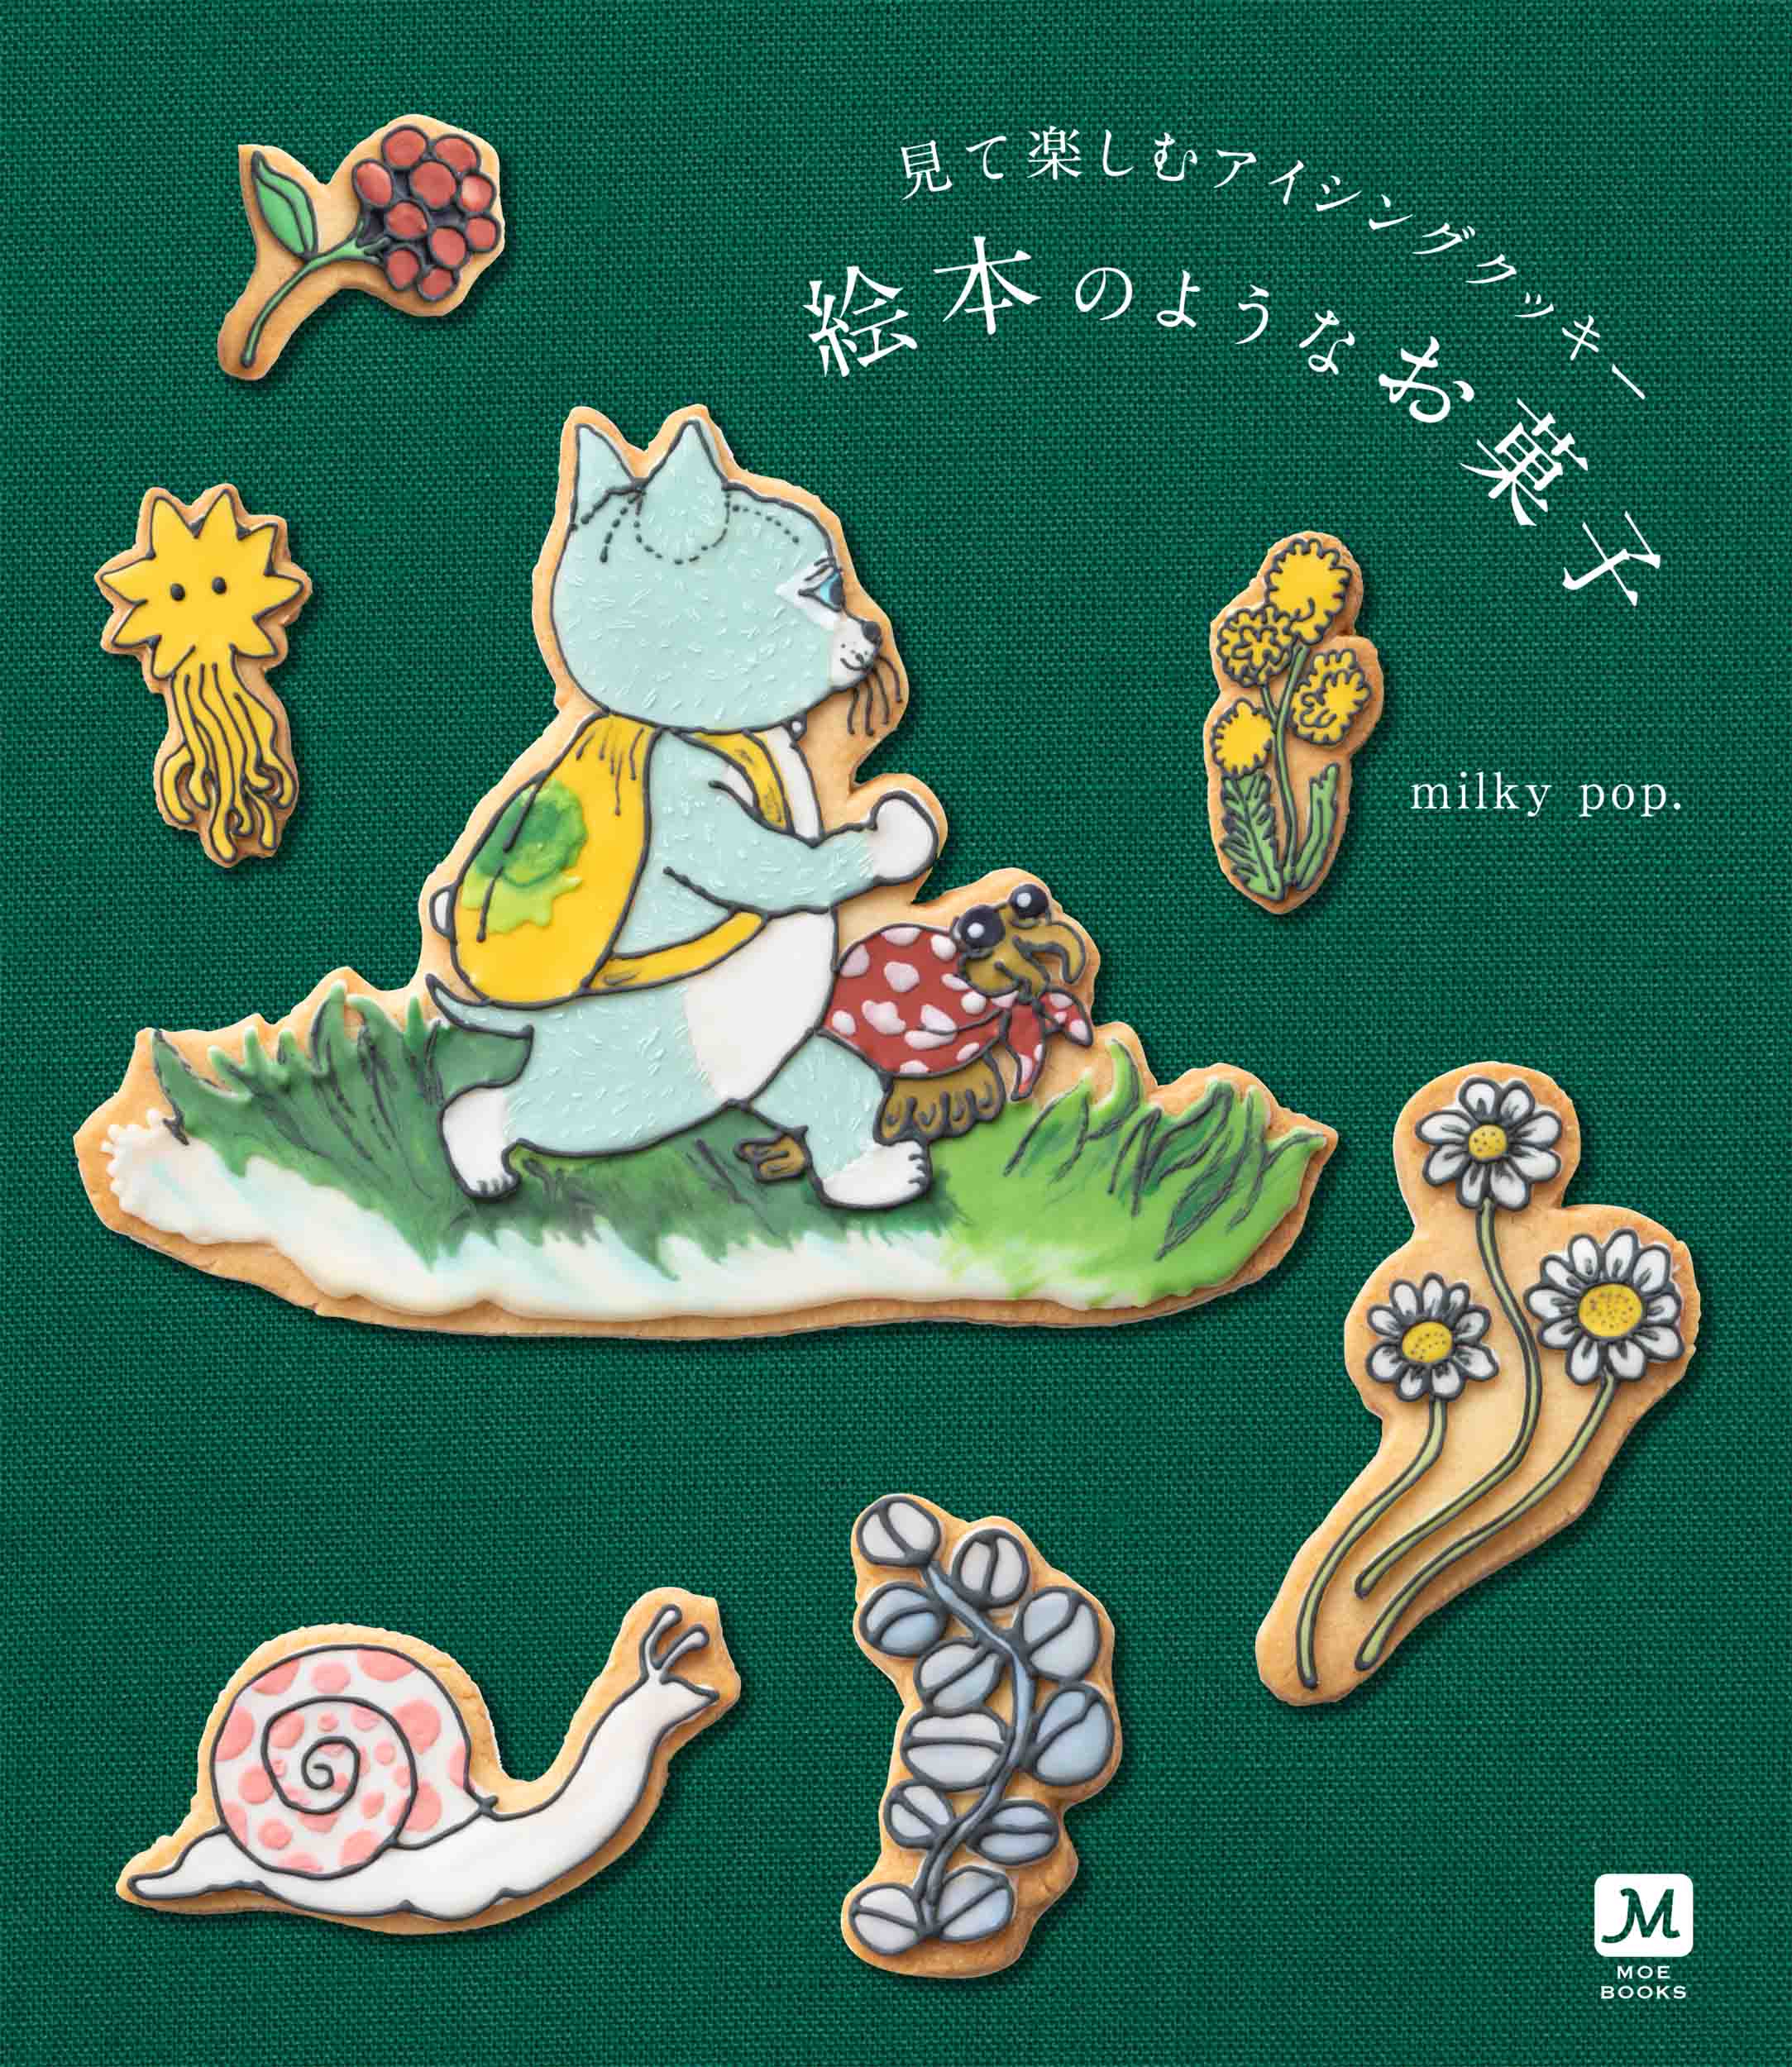 見て楽しむアイシングクッキー 絵本のようなお菓子の商品画像